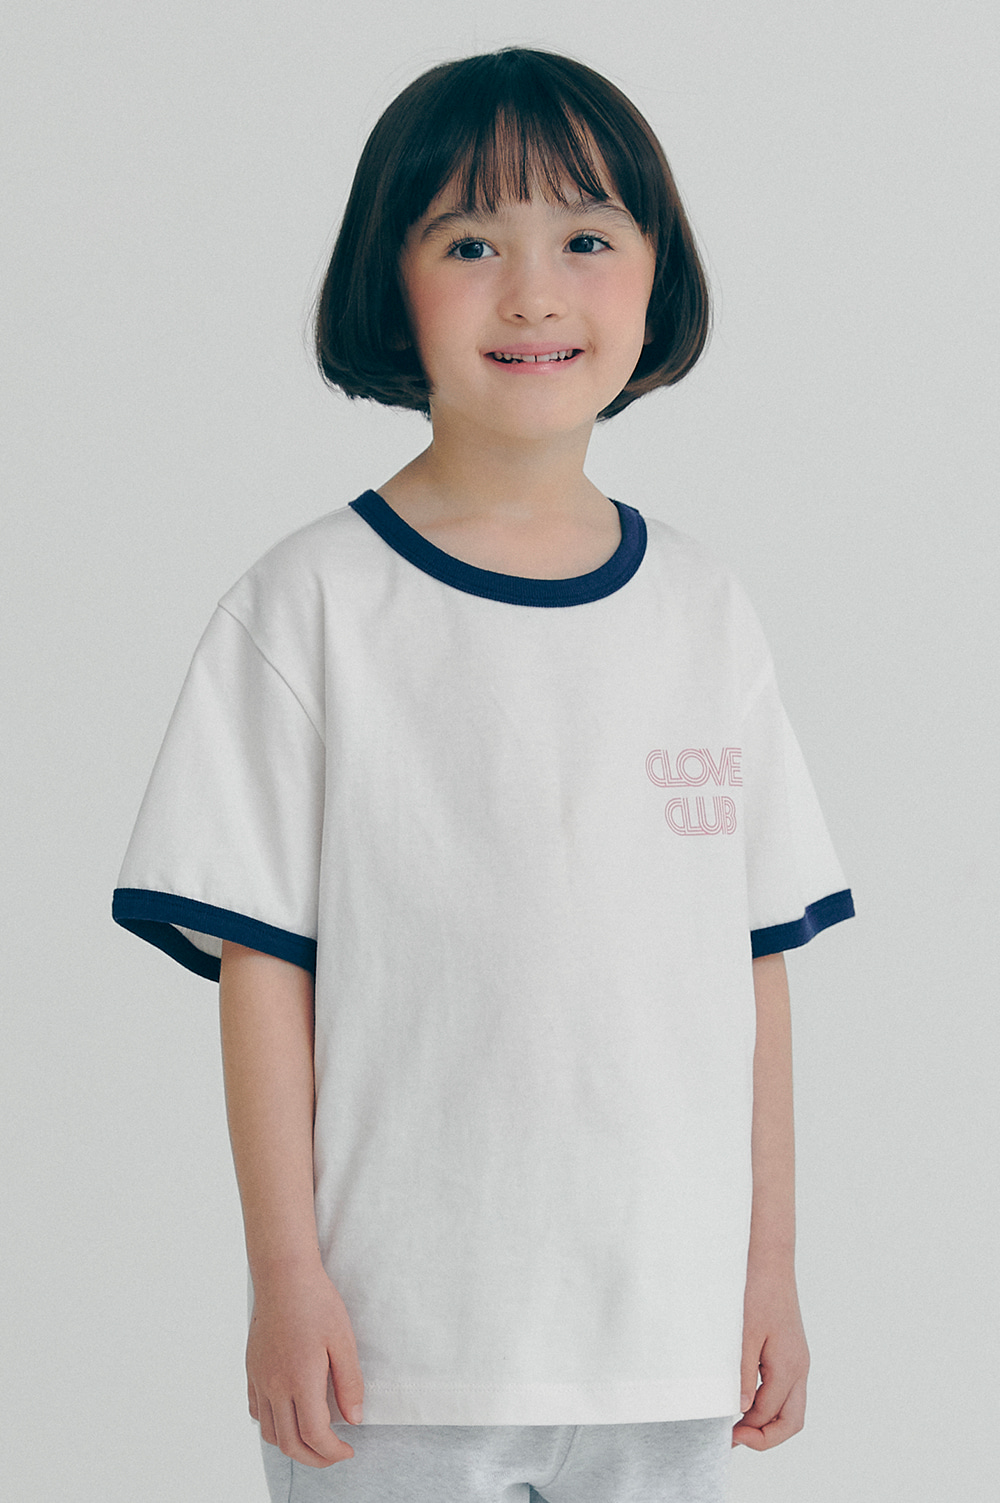 clove - [22SS clove] Point T-shirt_Kids (White)